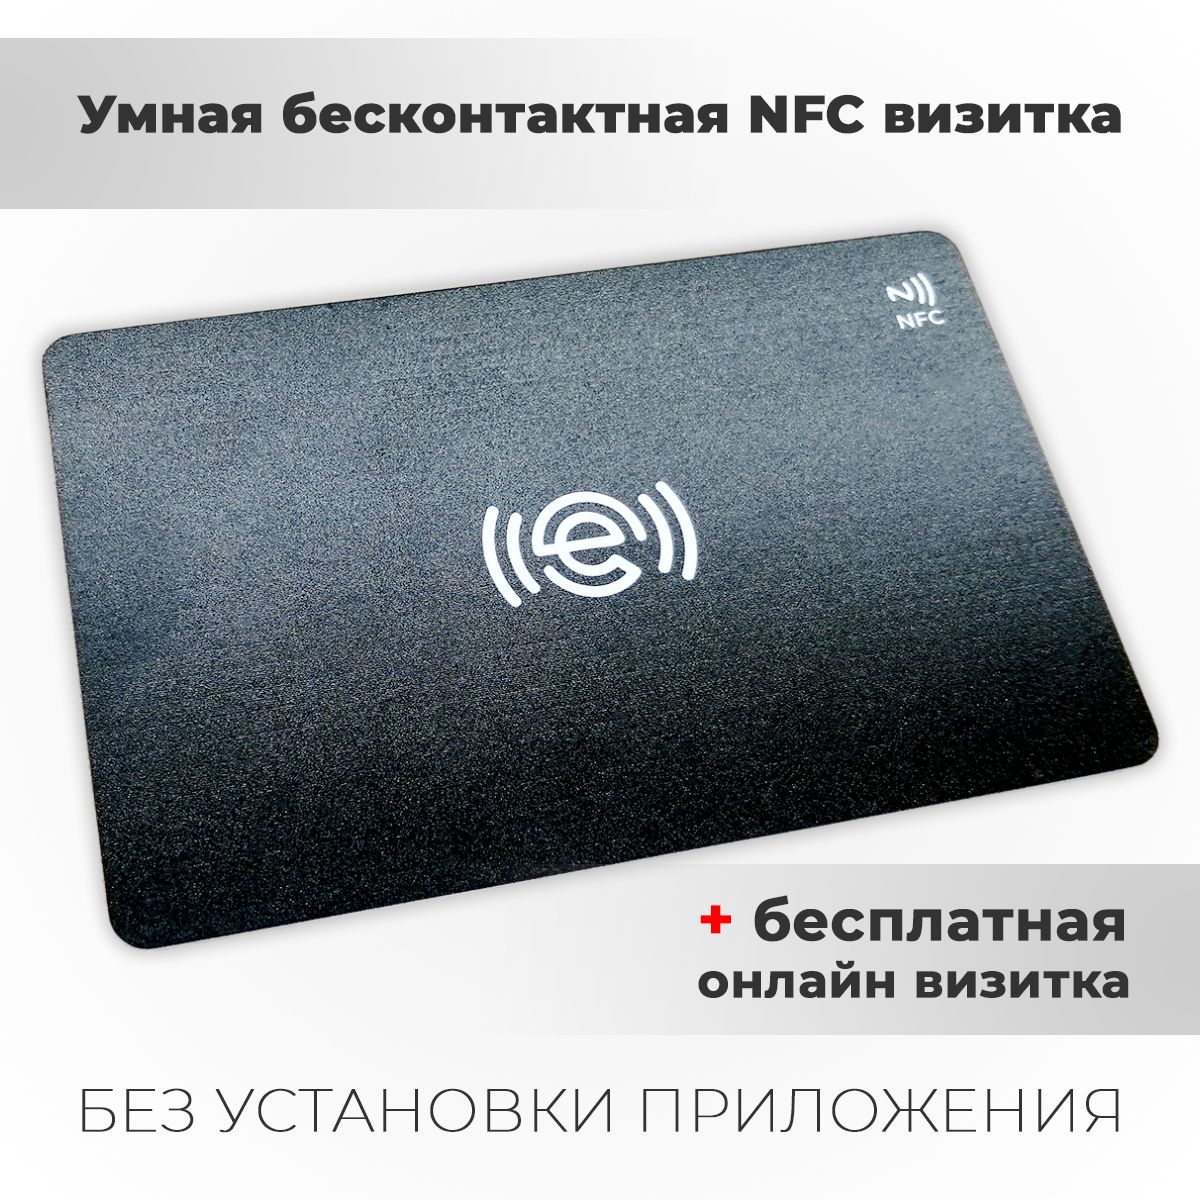 Умная визитка. Электронная визитка. Цифровая визитка. Умная визитка NFC. Электронная визитка пример.